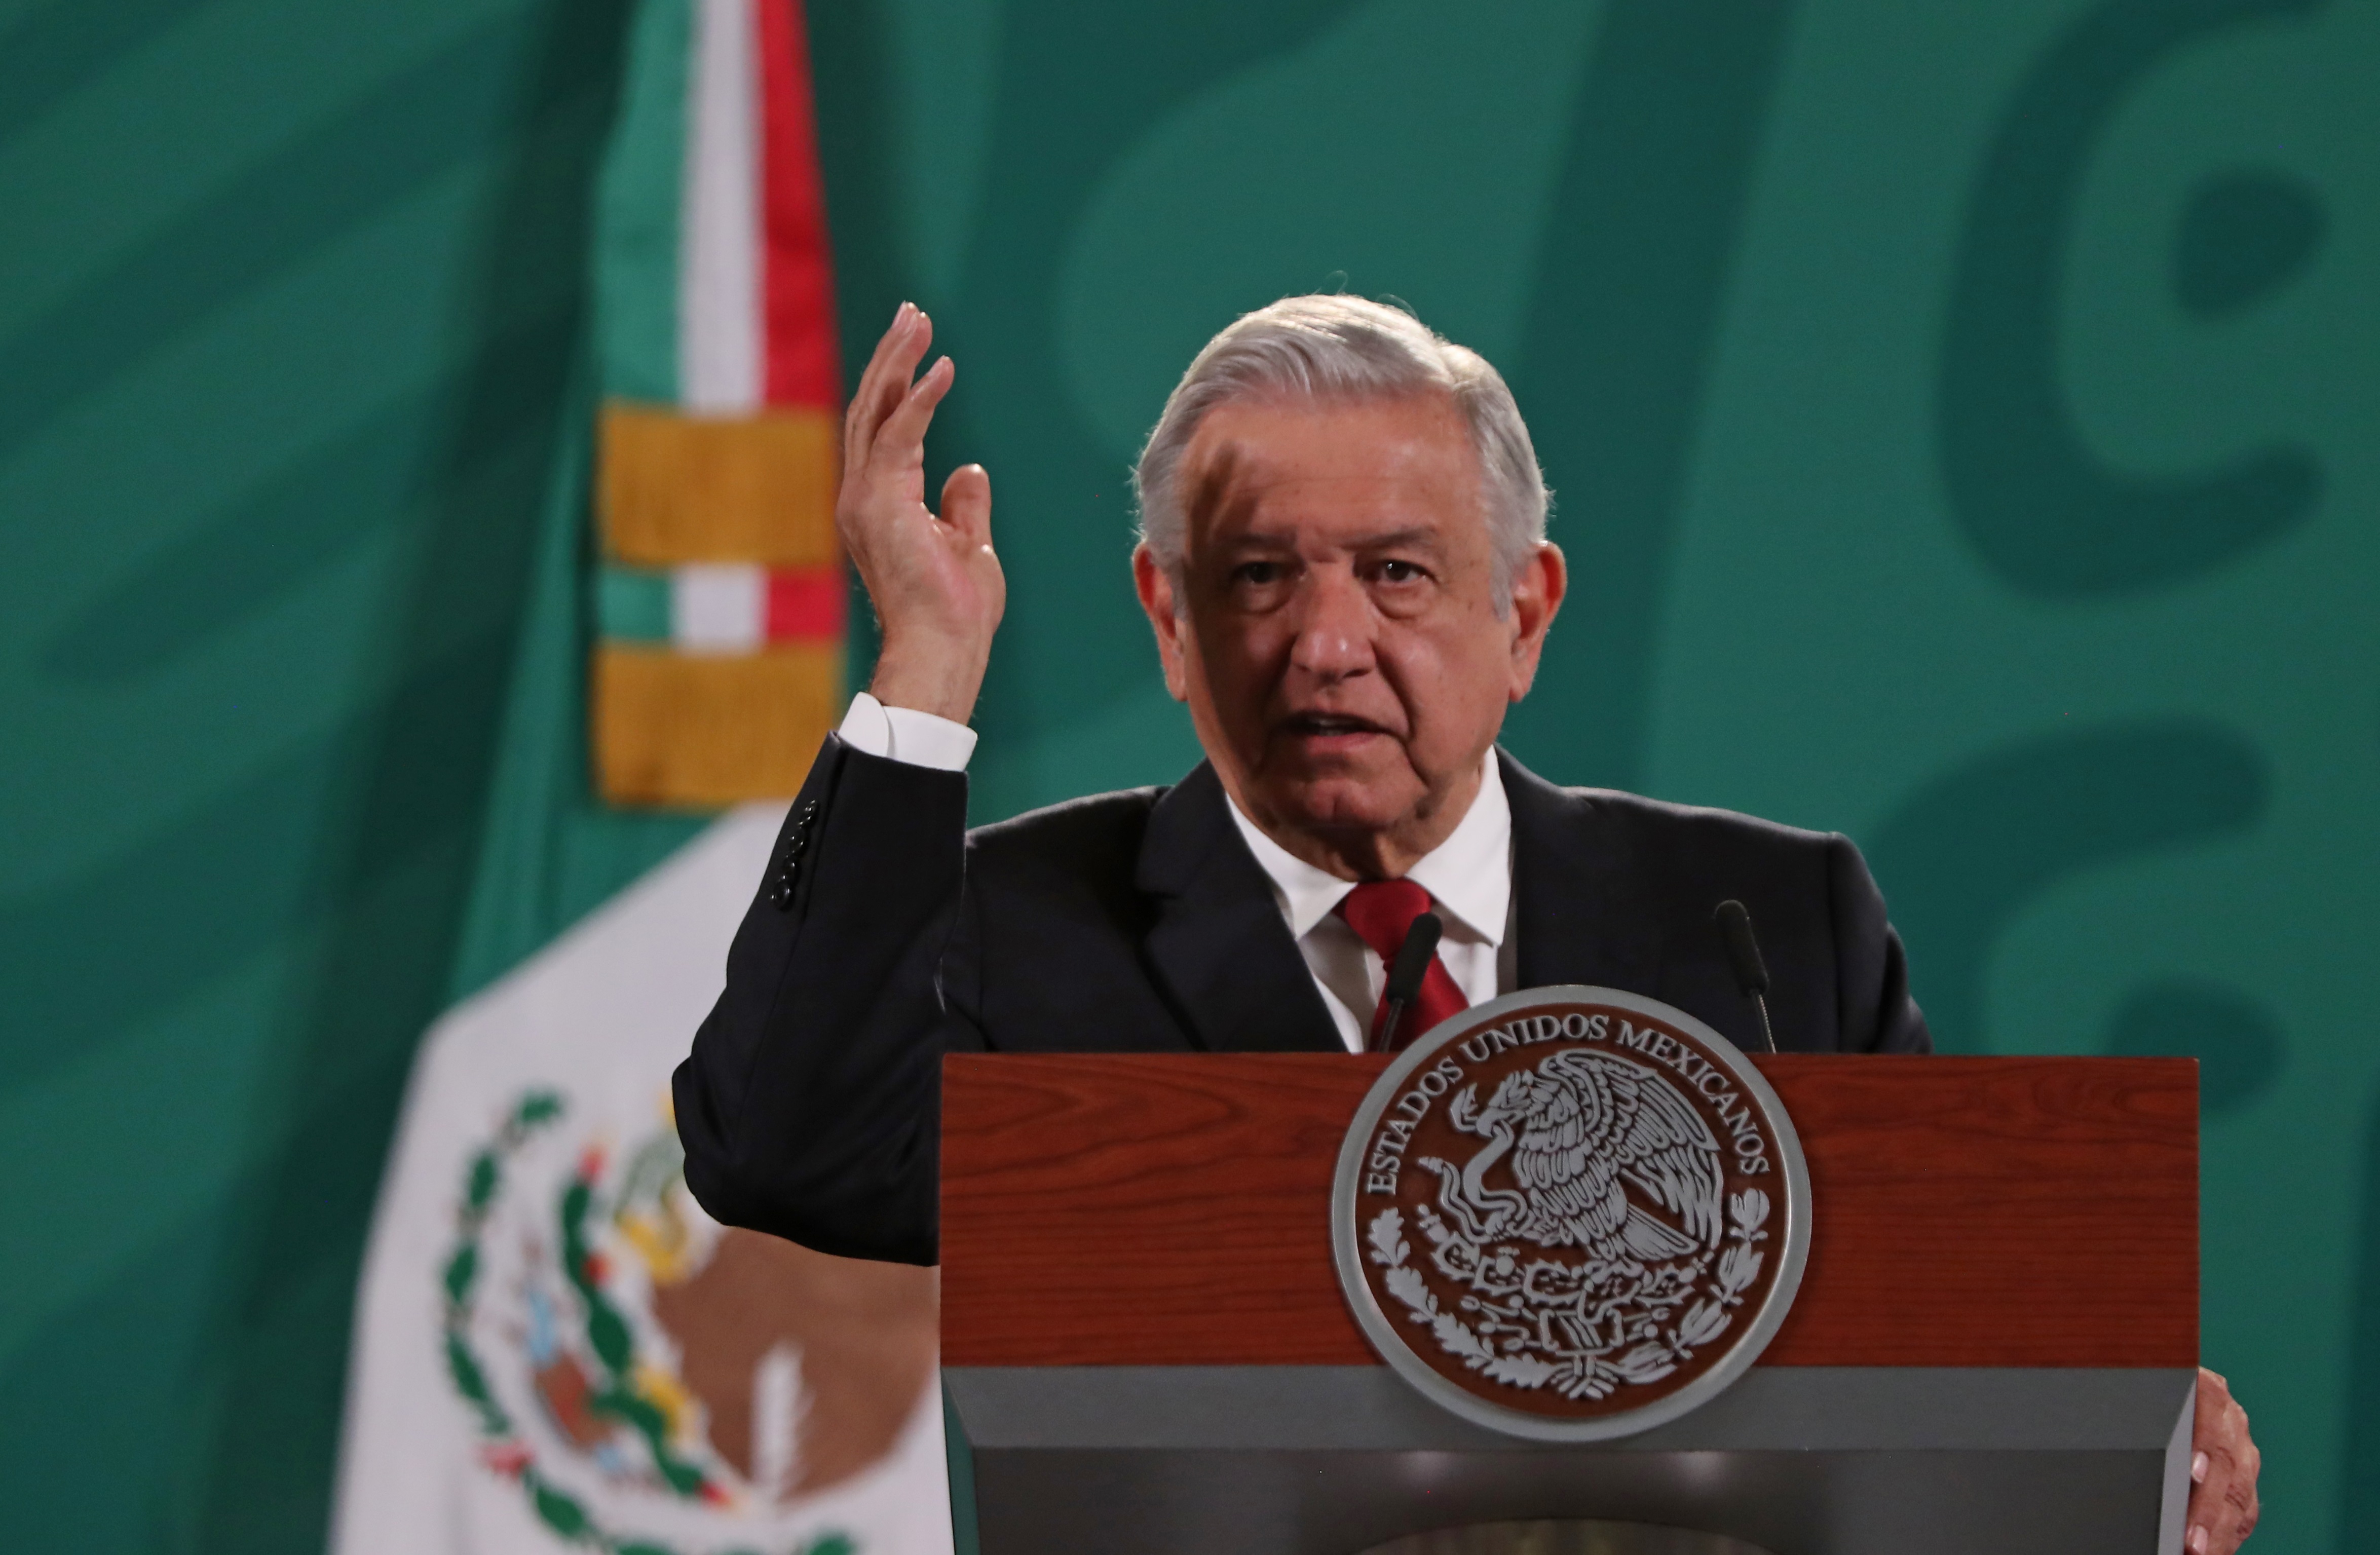 El presidente mexicano reprobó el intento por cambiar la versión de lo ocurrido en Iguala. (Foto: EFE/Mario Guzmán)
